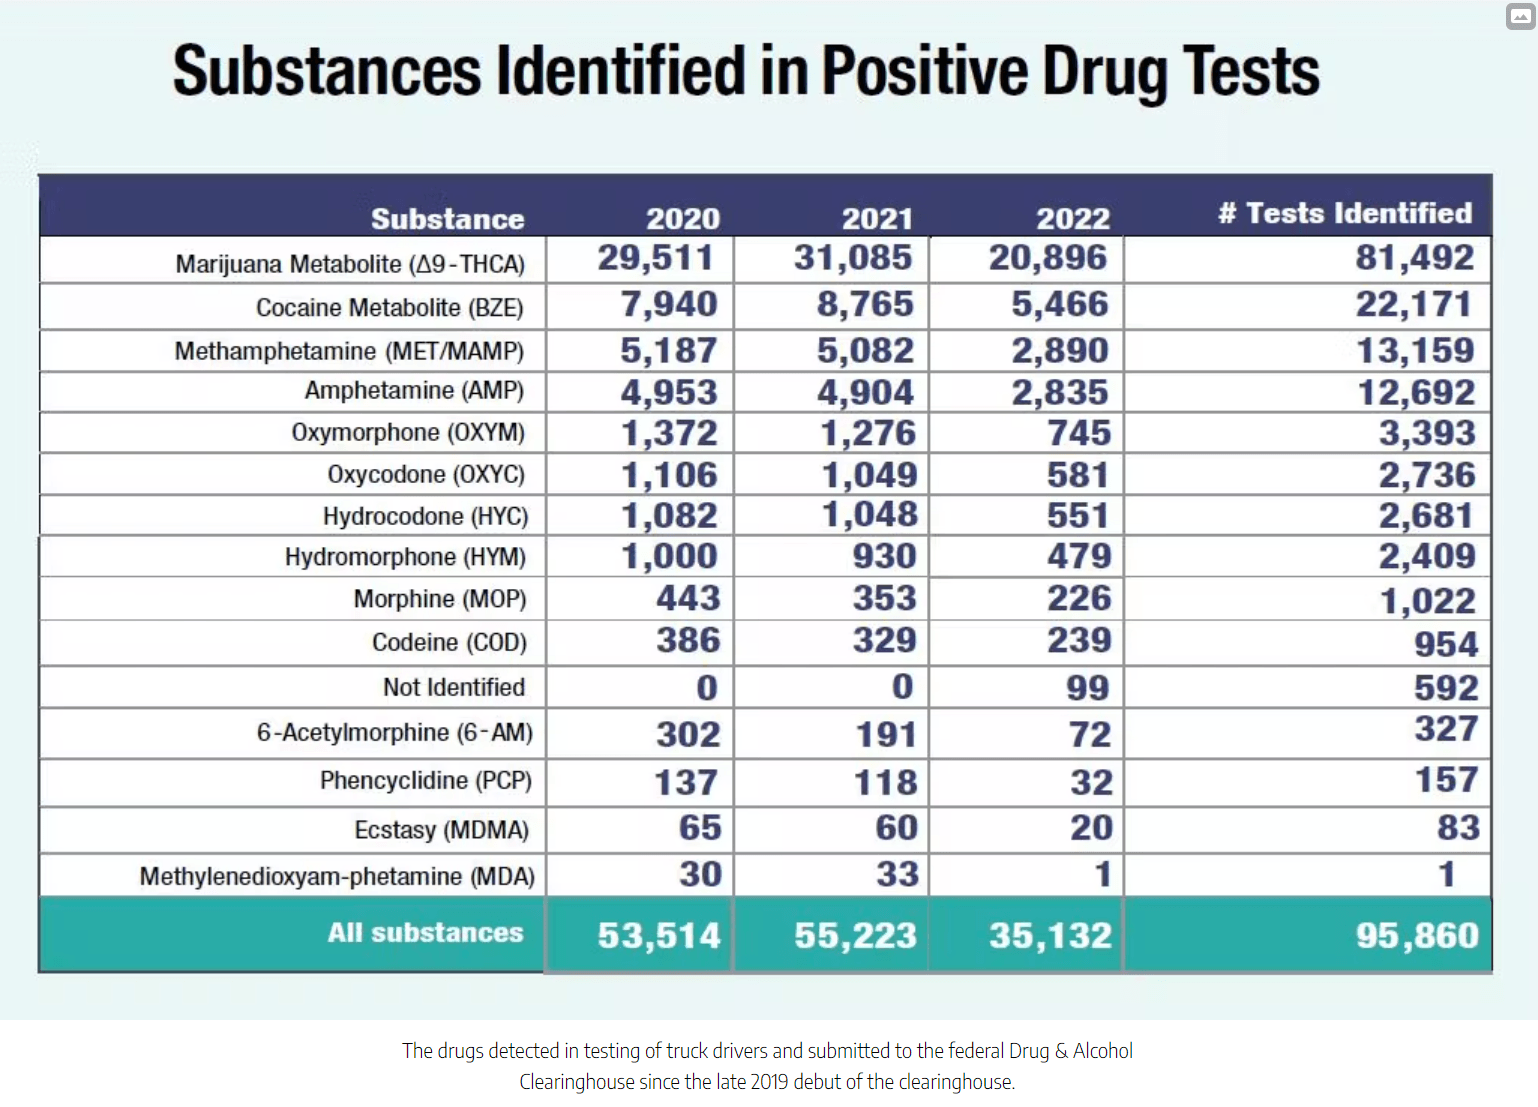 Substances identified in positive drug test